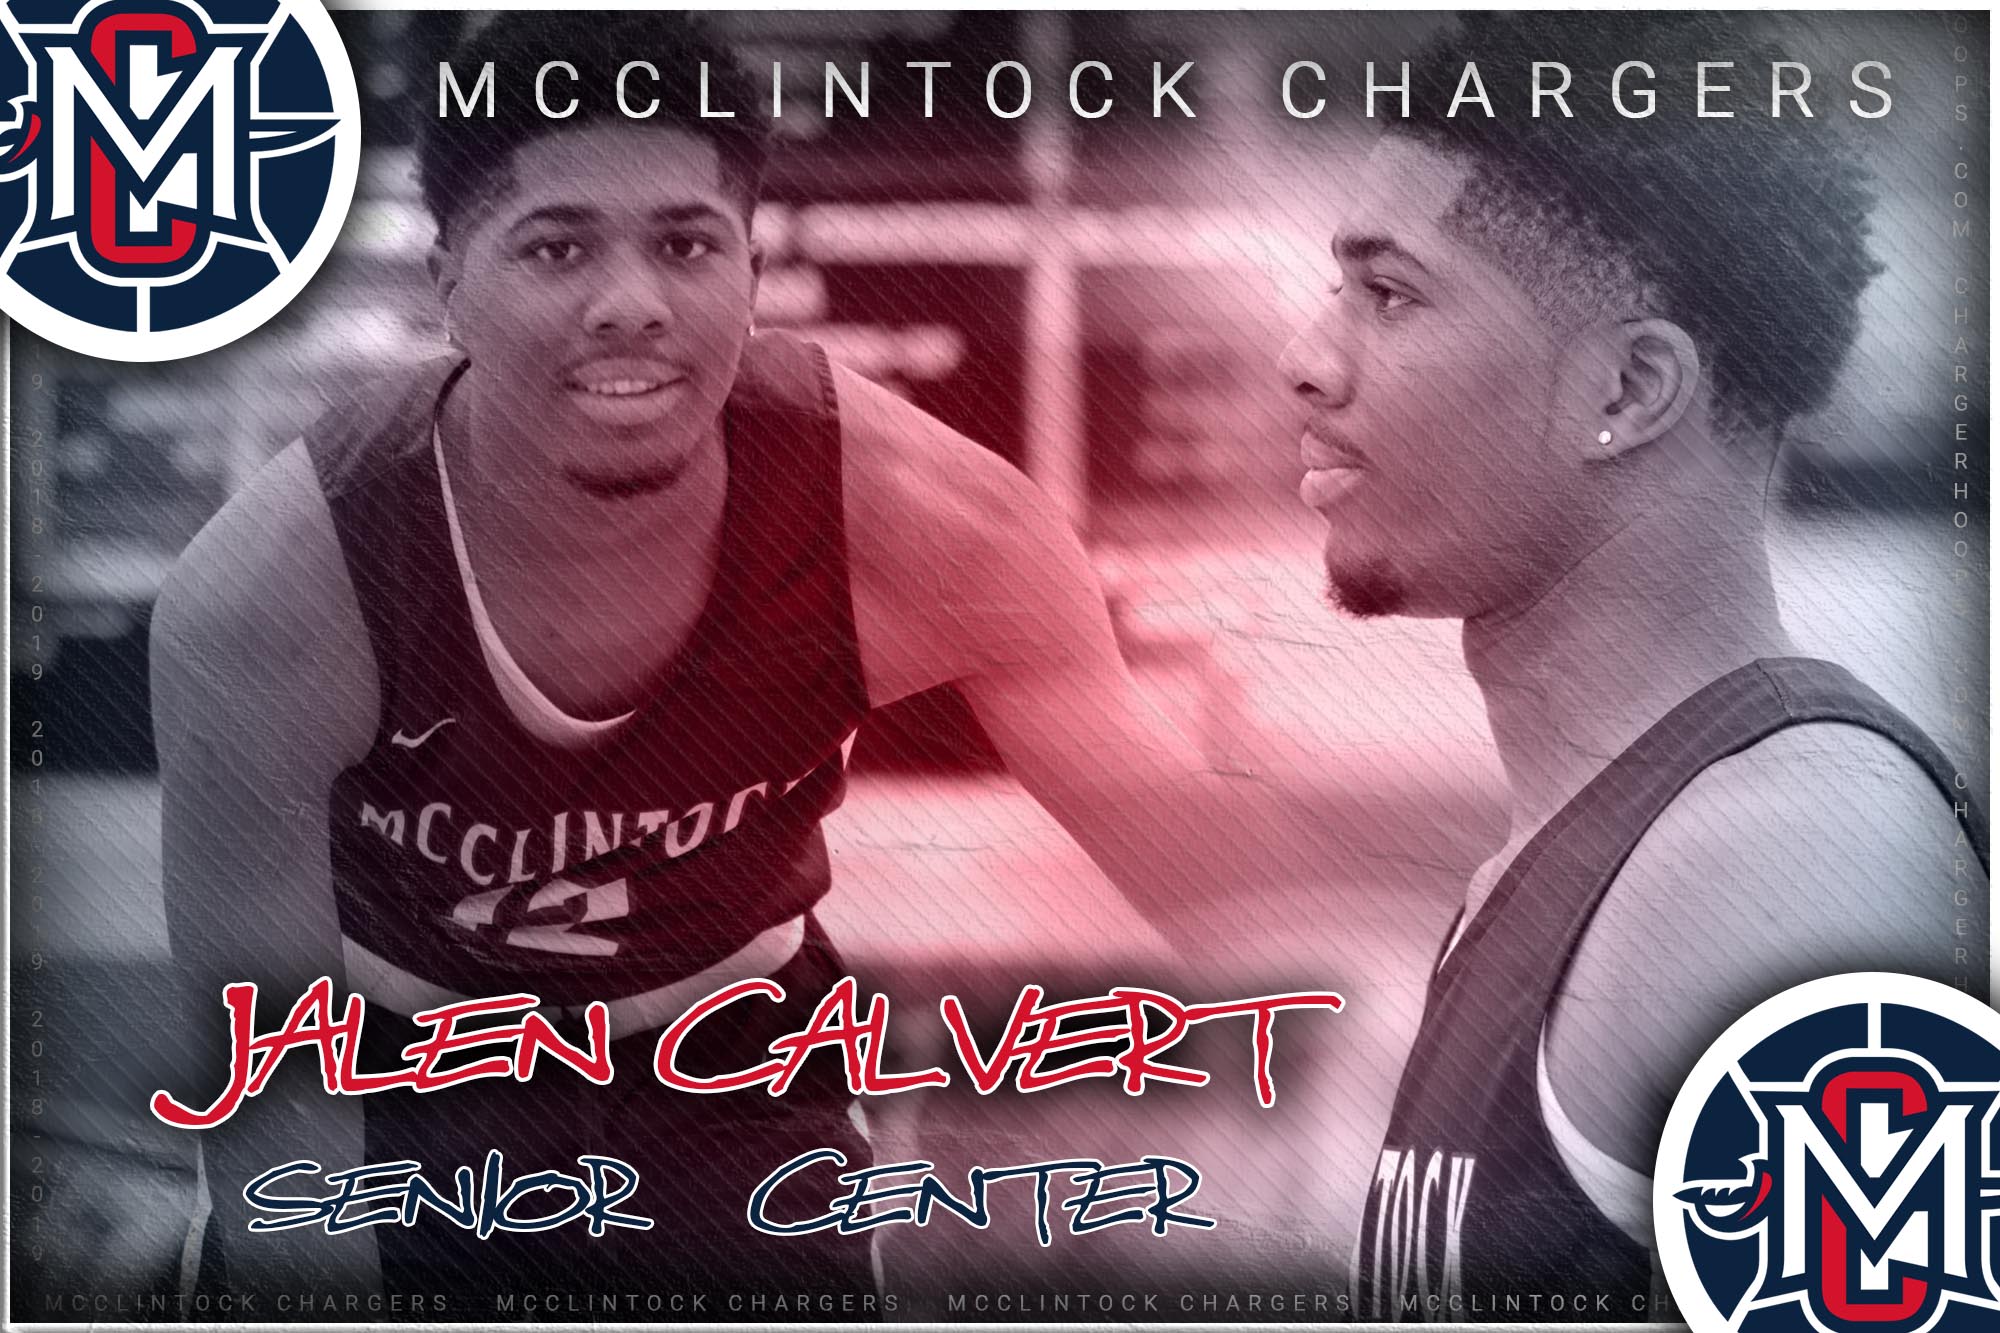 McClintock Chargers Basketball- Jalen Calvert